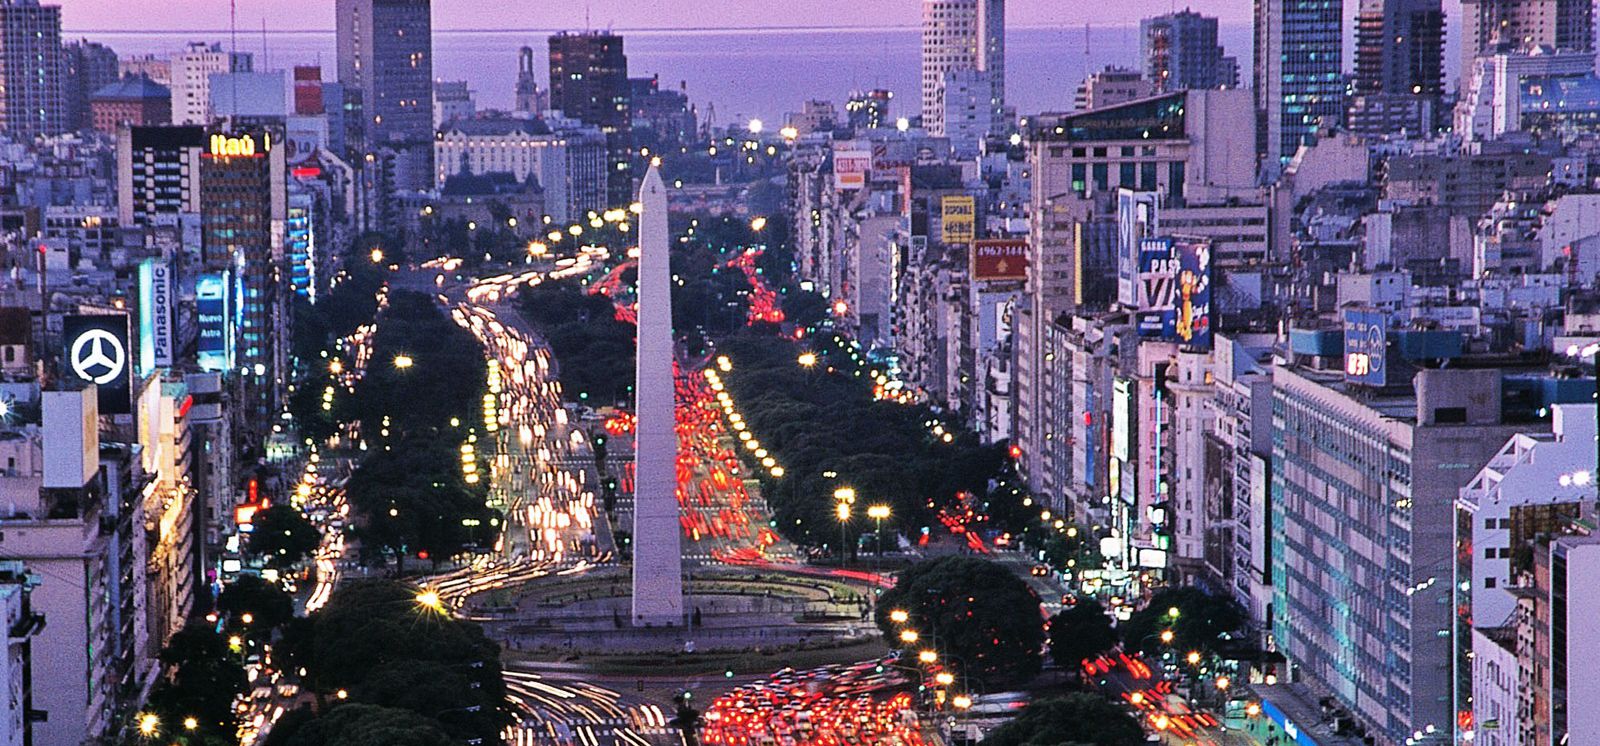 El Obelisco de Buenos Aires hoy en día